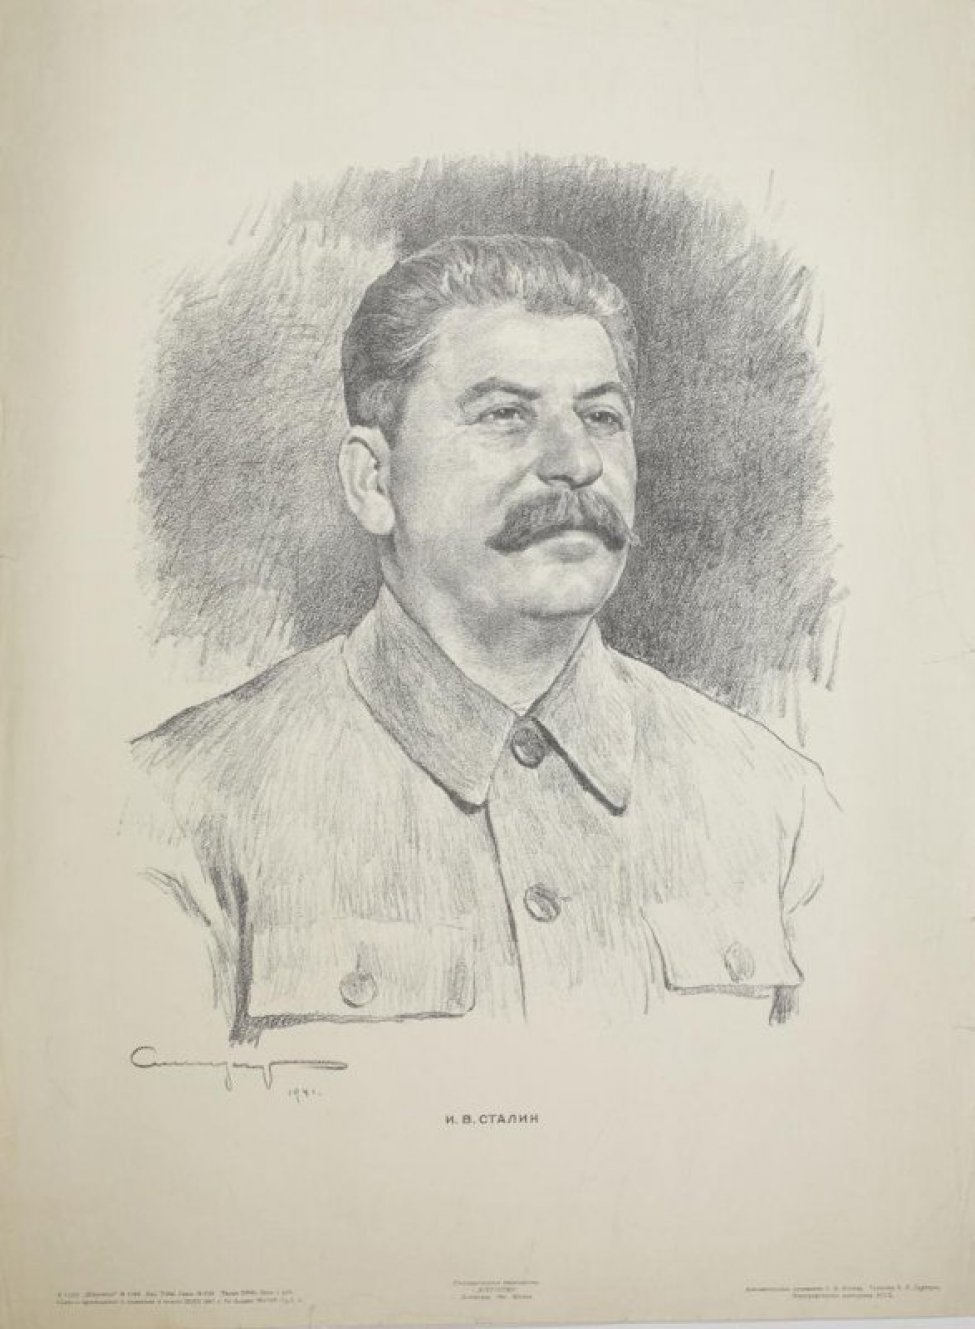 Погрудное изображение Сталина. Поворот головы 3/4 вправо.